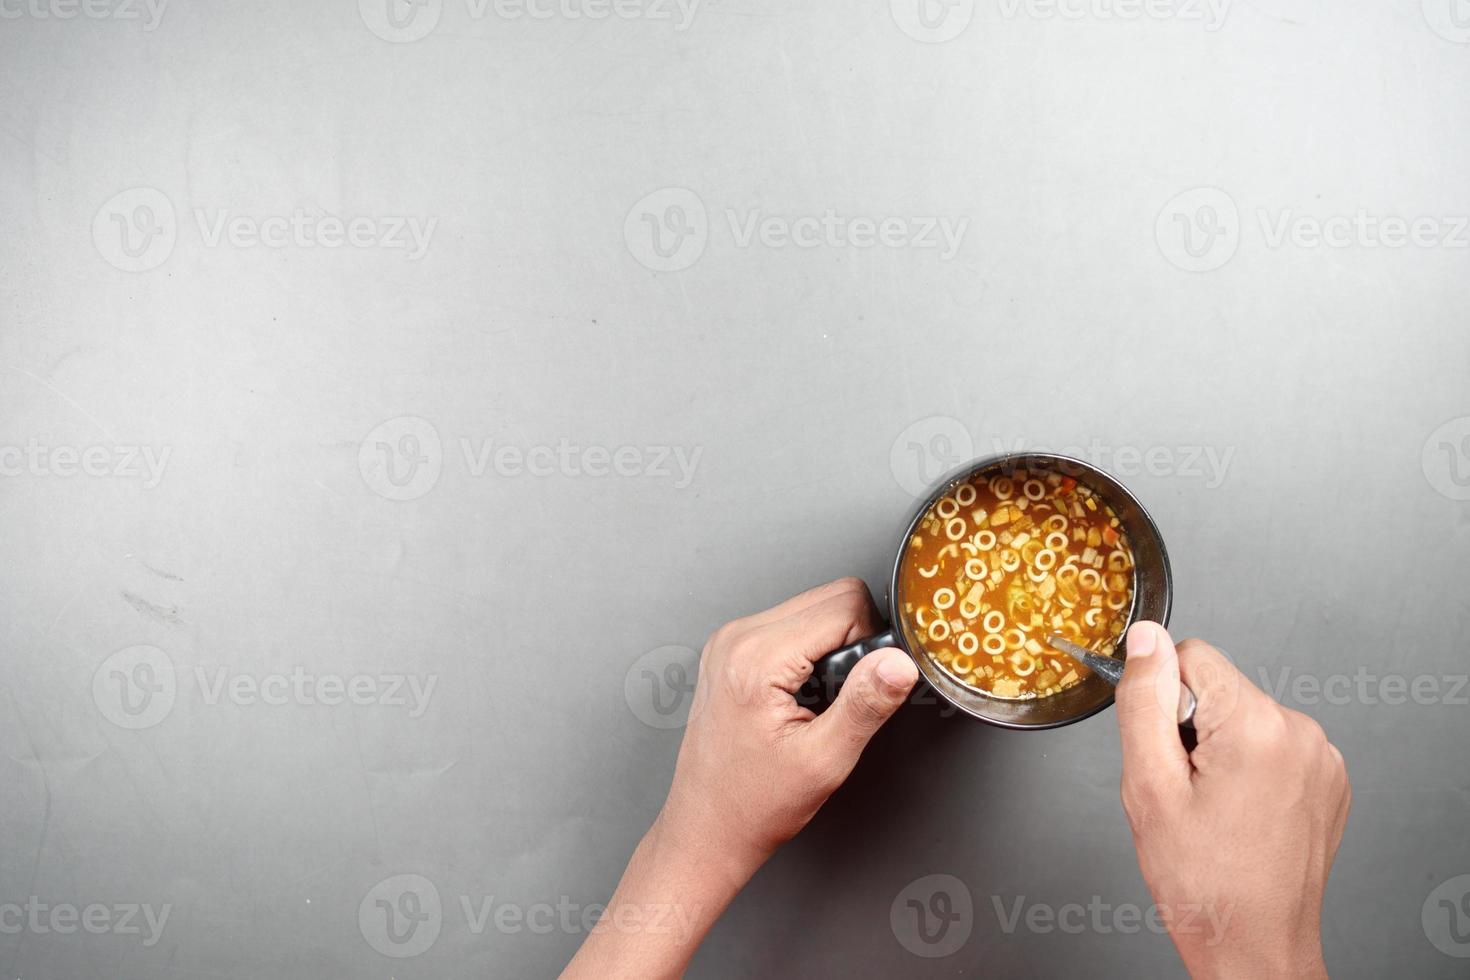 zuppa di tazza istantanea in una tazza sul tavolo foto